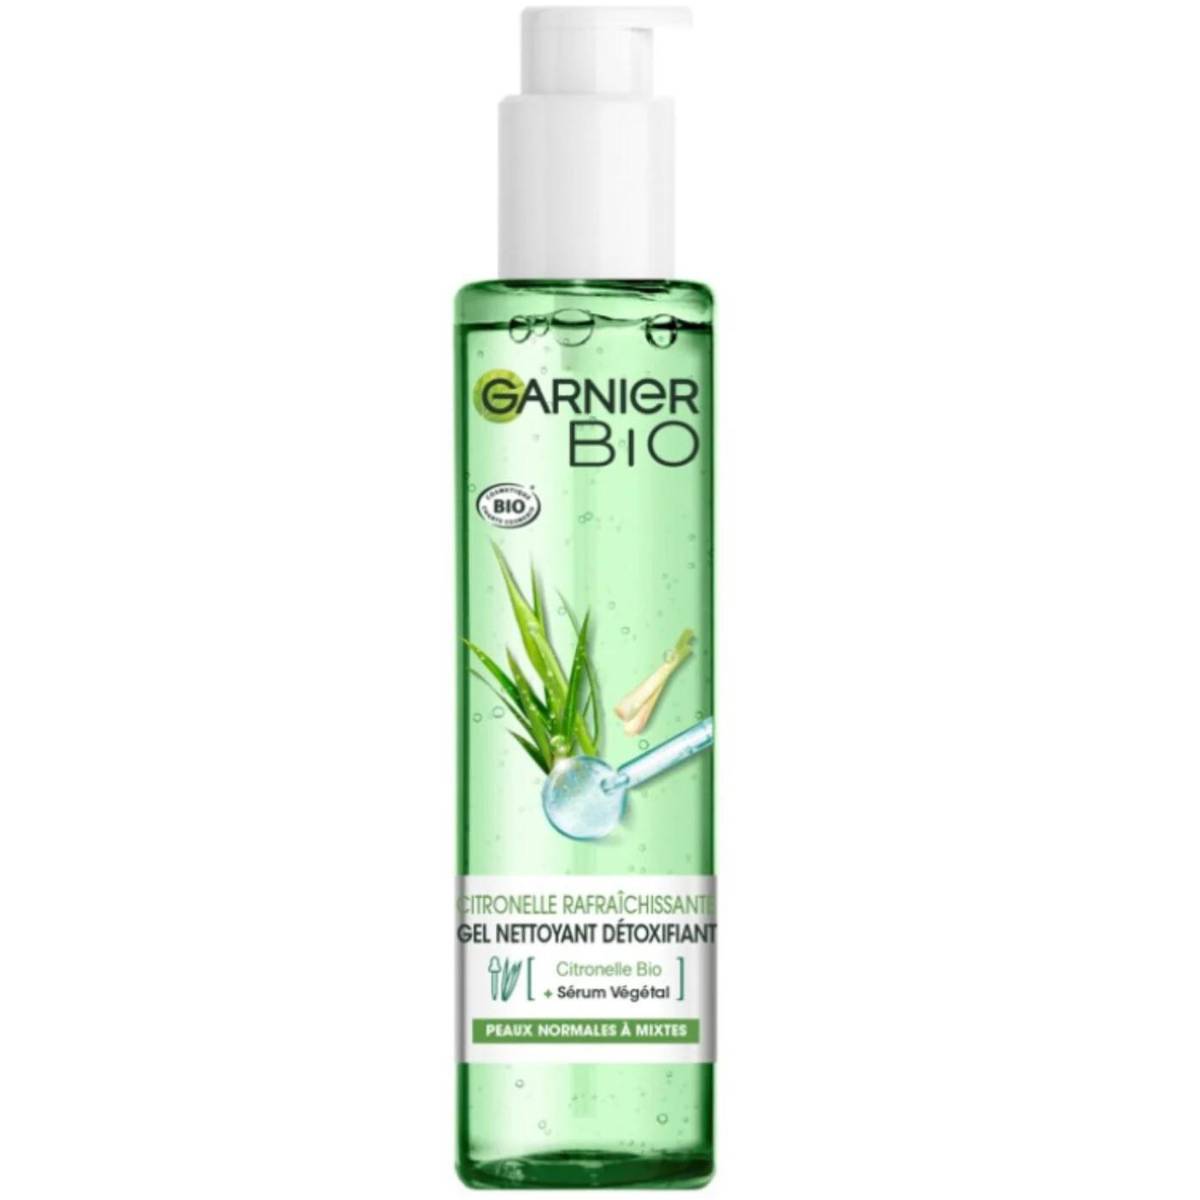 Lemongrass Bio 150ml - Face MaxxiDiscount Cleanser Detoxifying Garnier